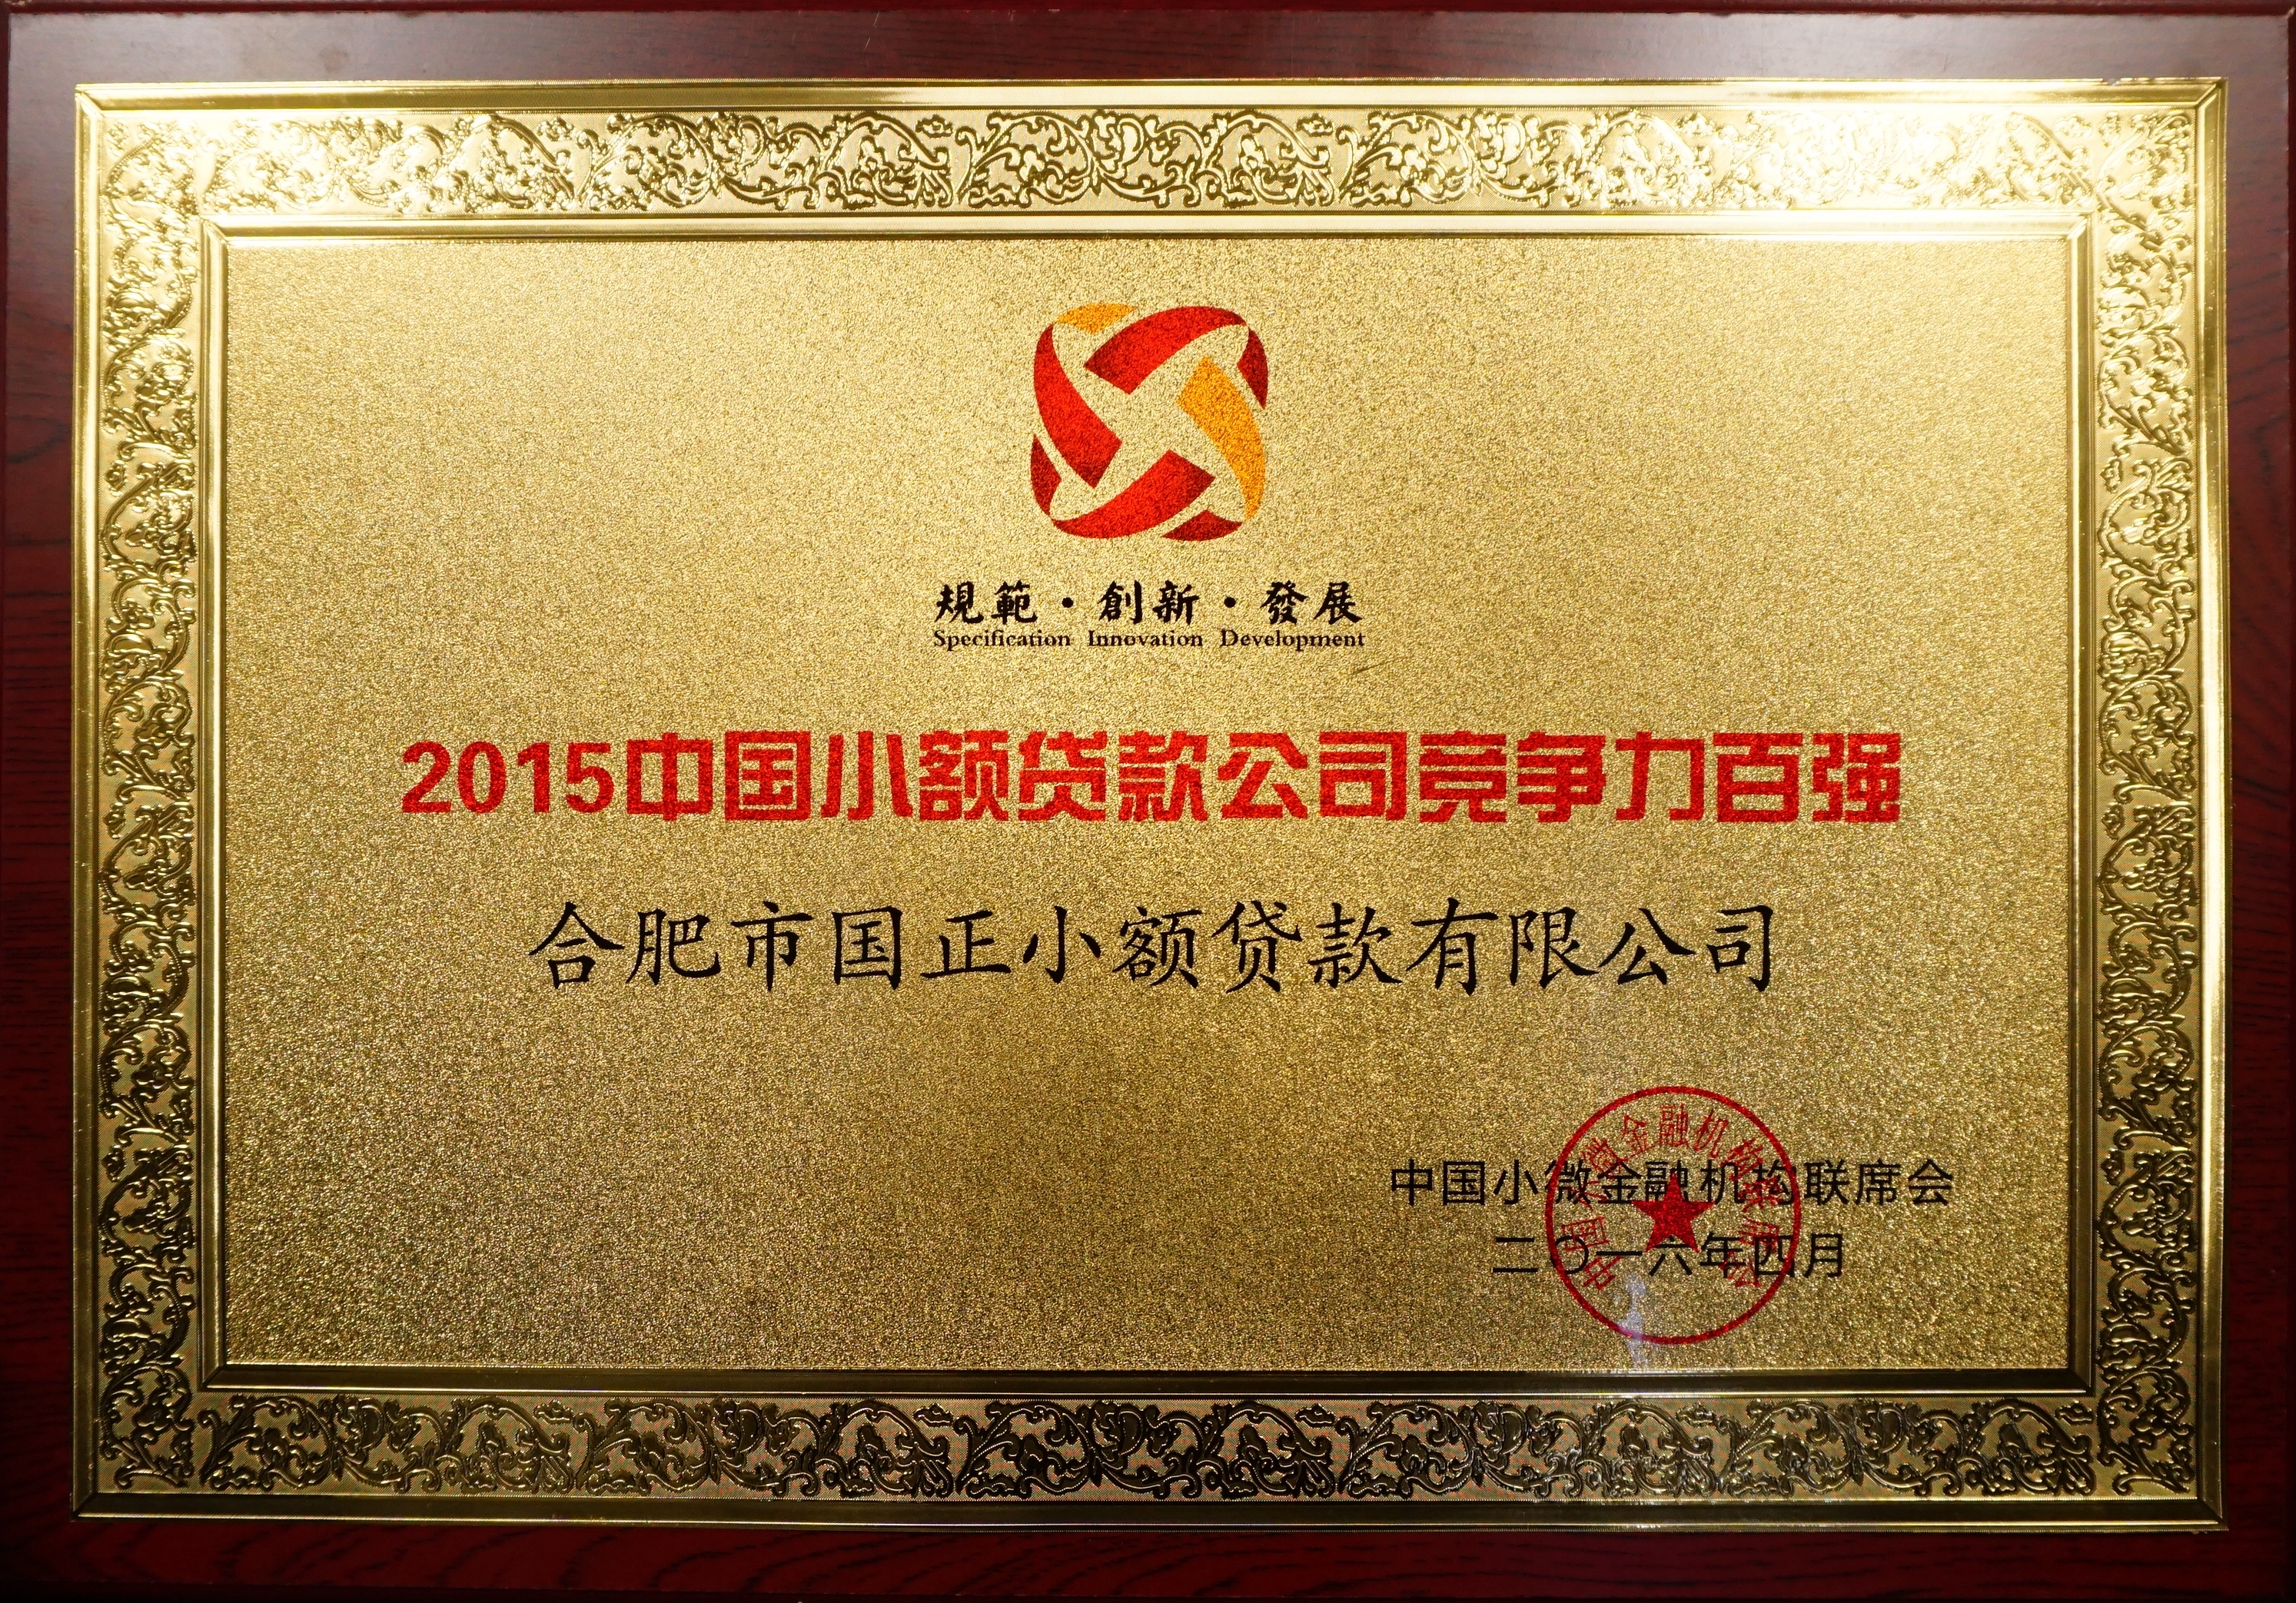 公司荣获“2015中国小微金融机构竞争力百强”